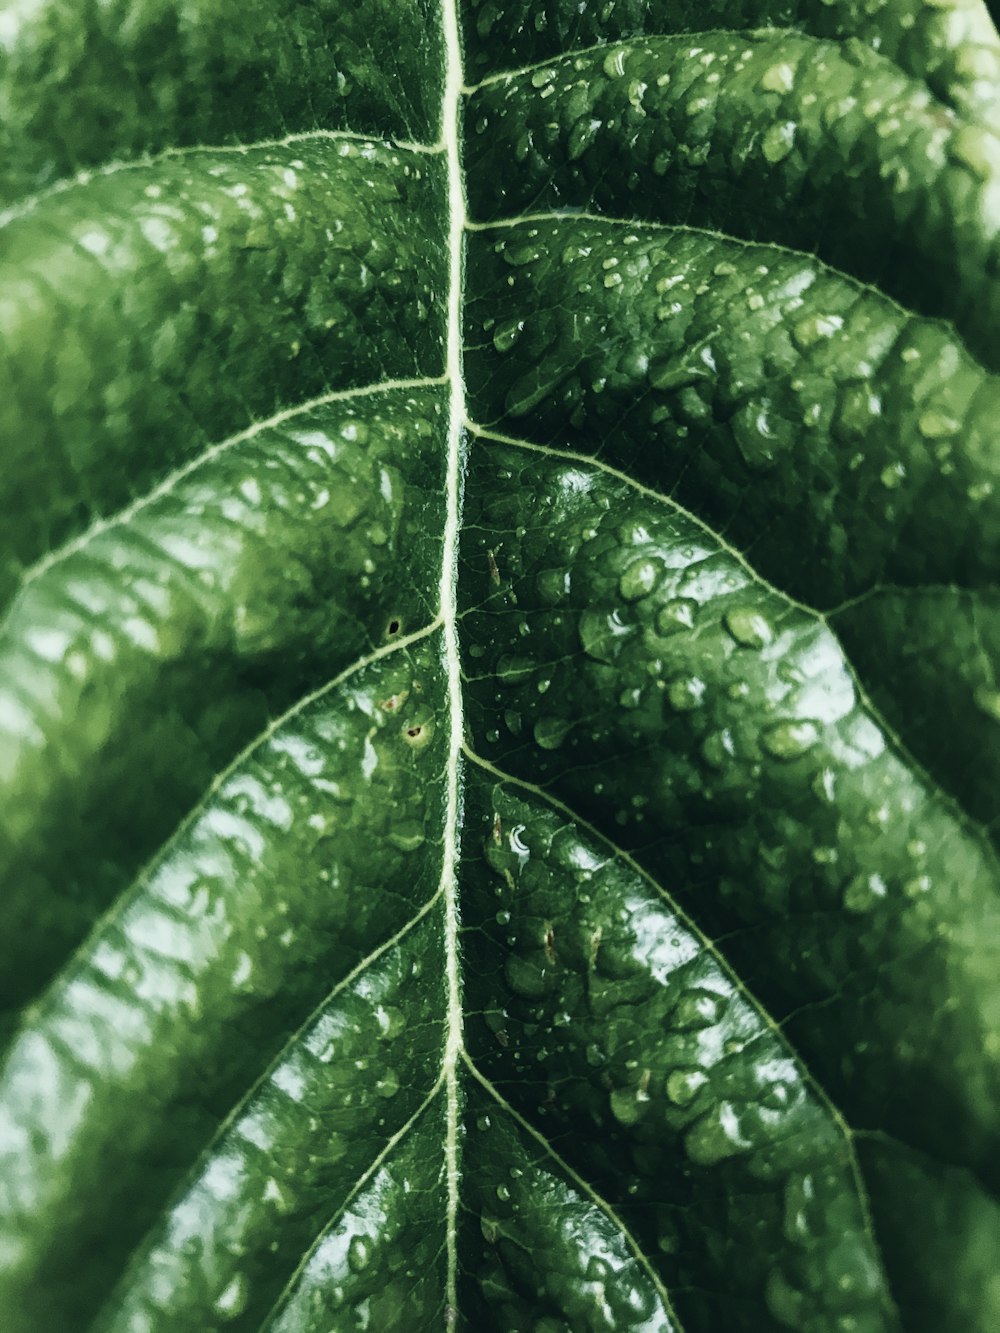 緑の葉についた水滴